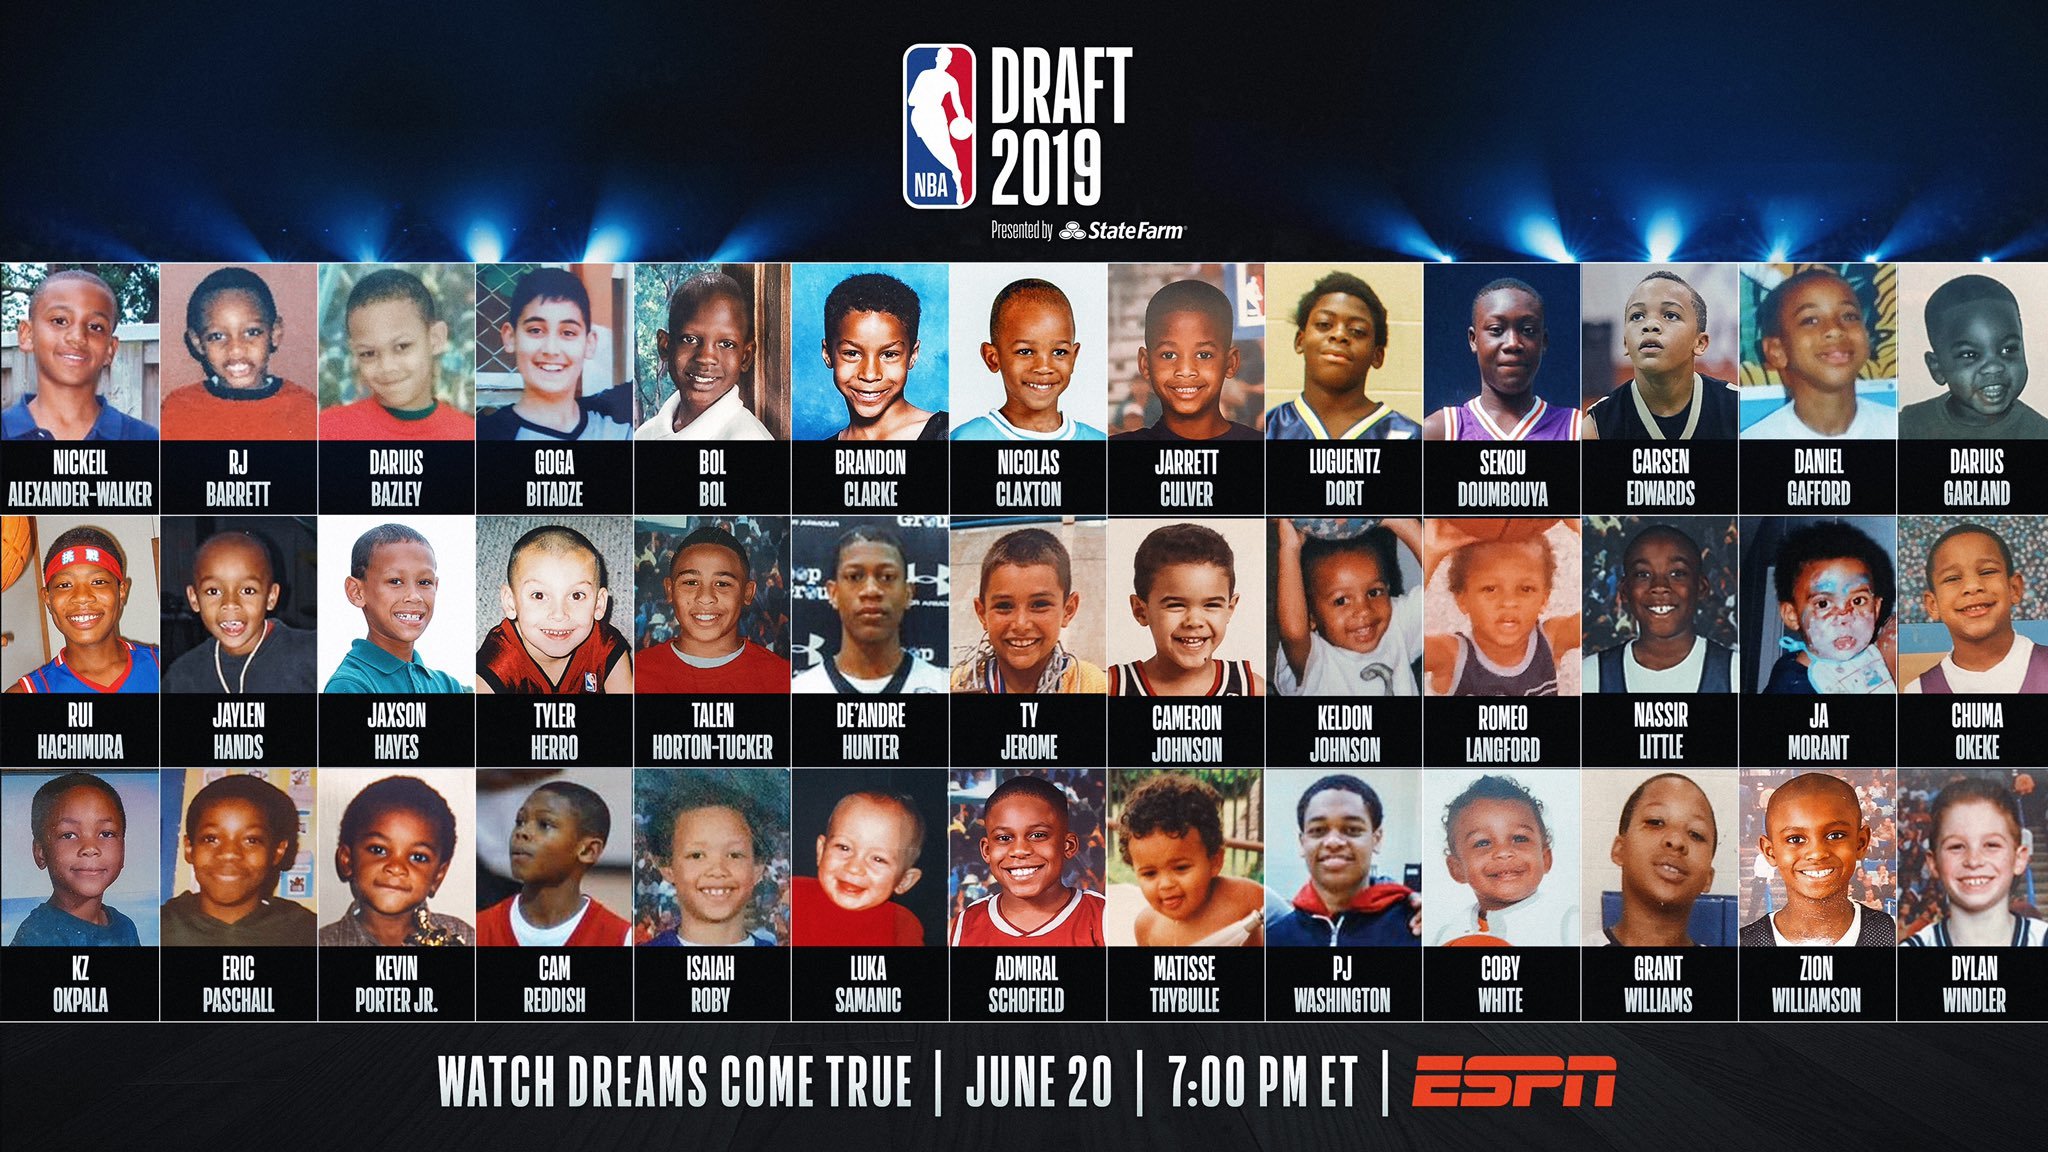 ¿Cuántos jugadores entran al draft de la NBA?